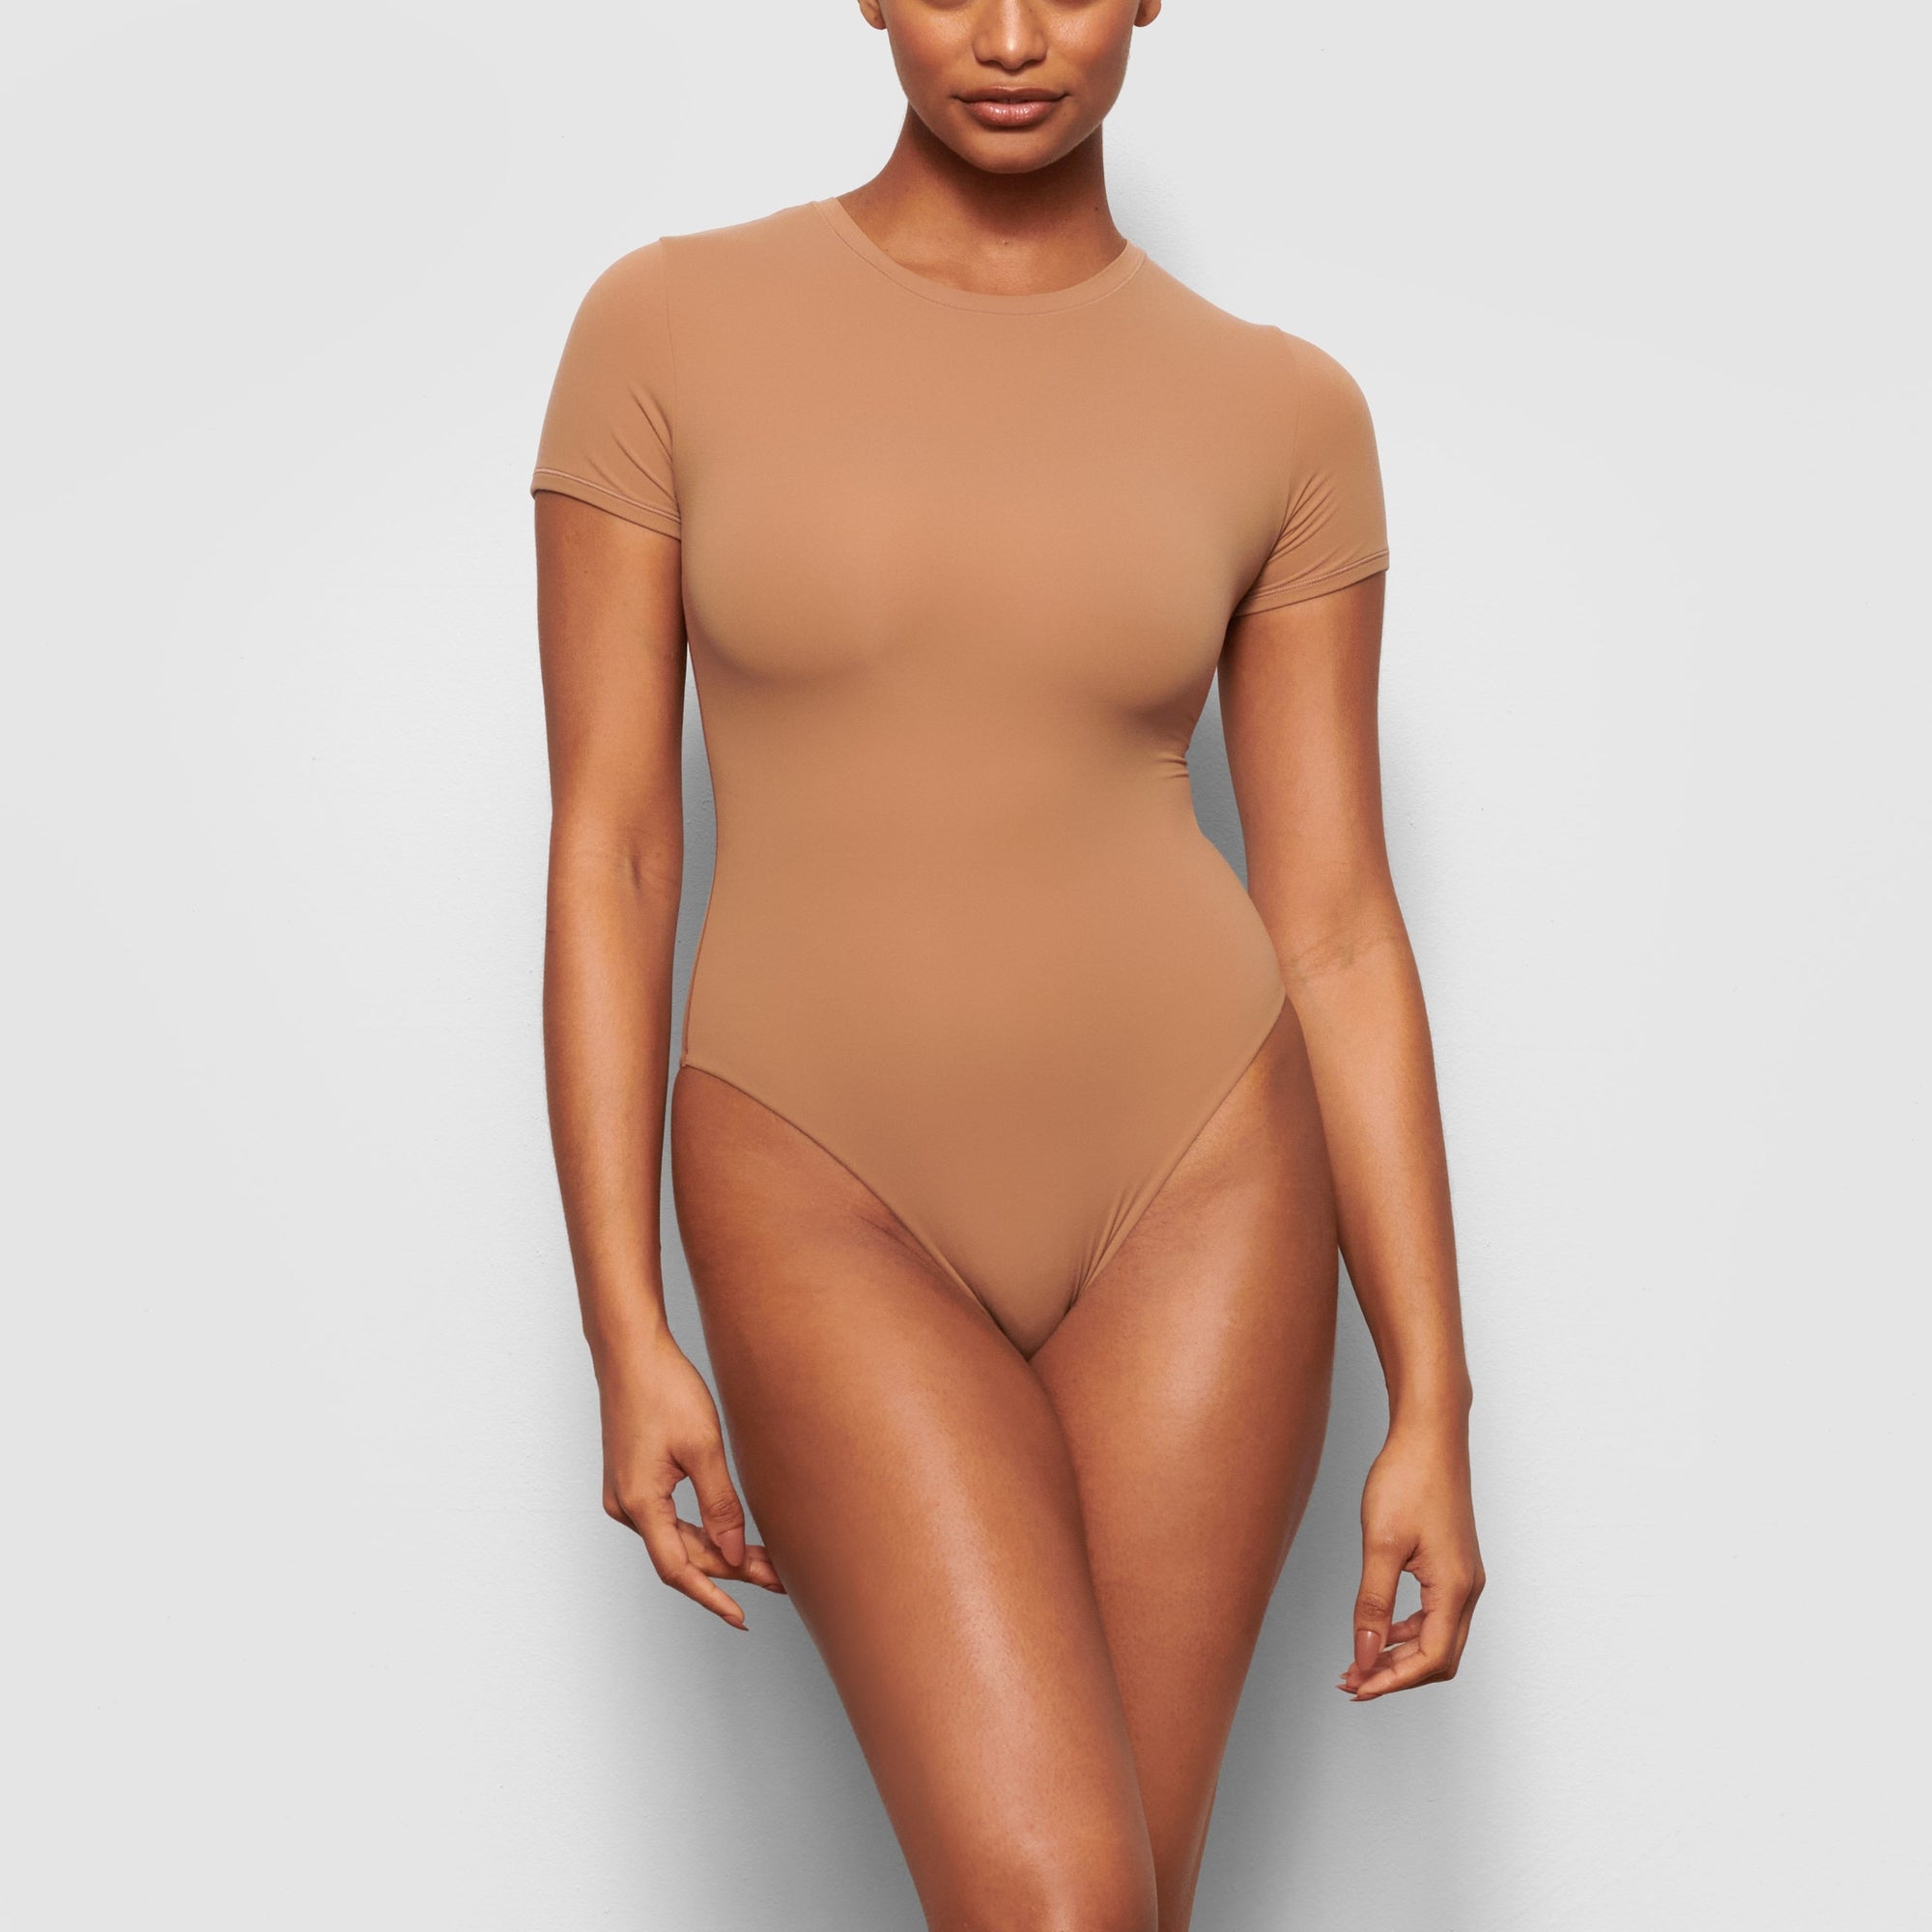 SKIMS Brown Bodysuit , Size Medium. Color is Sienna